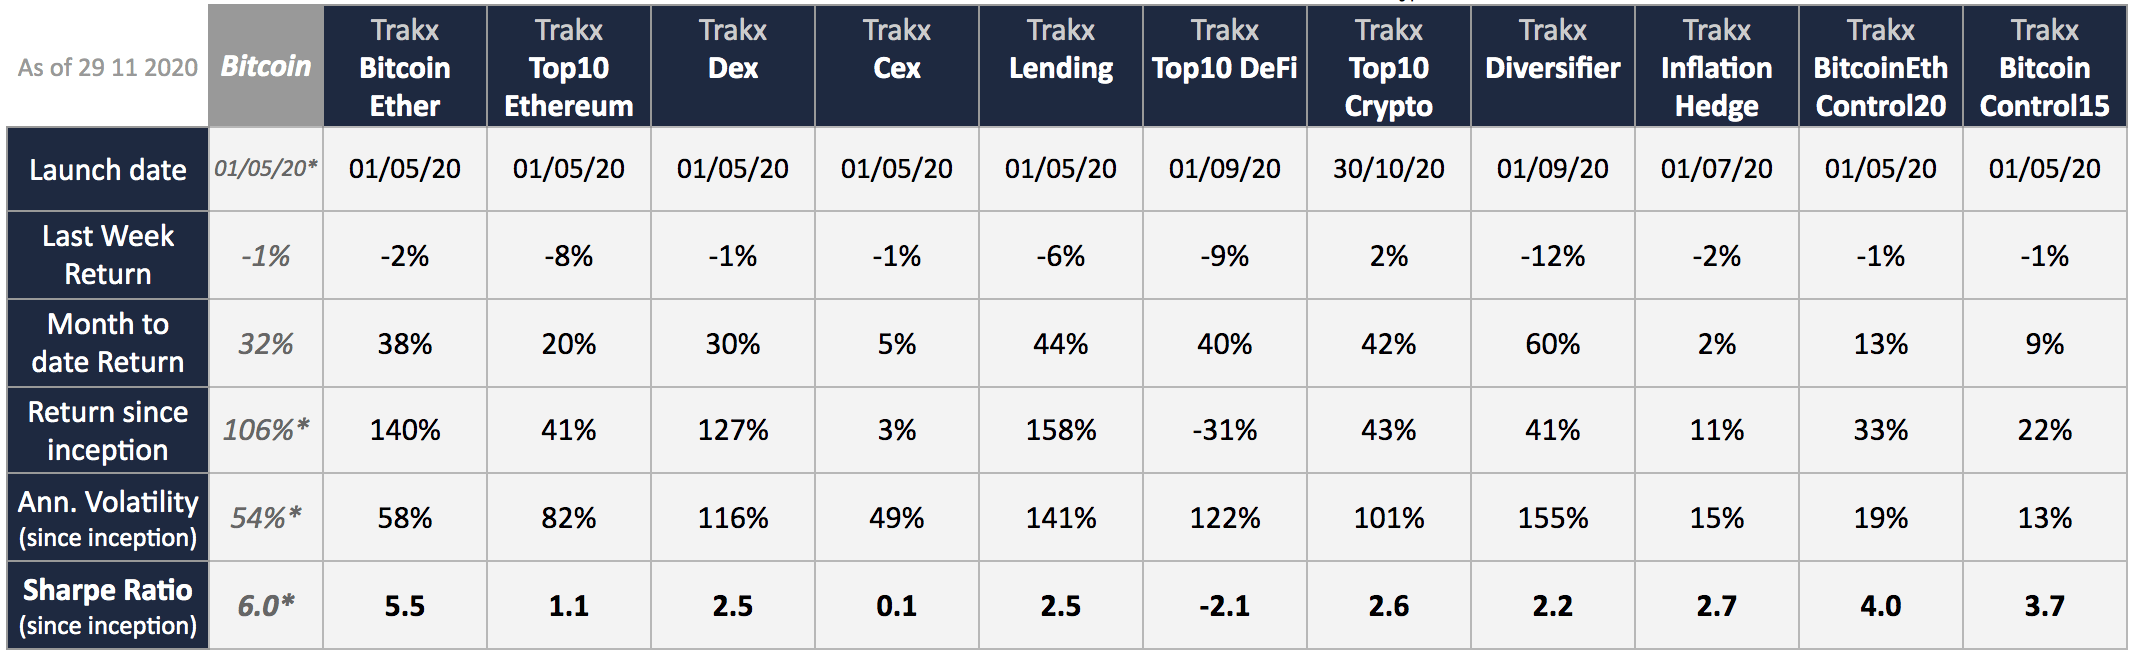 Trakx CTIs performance